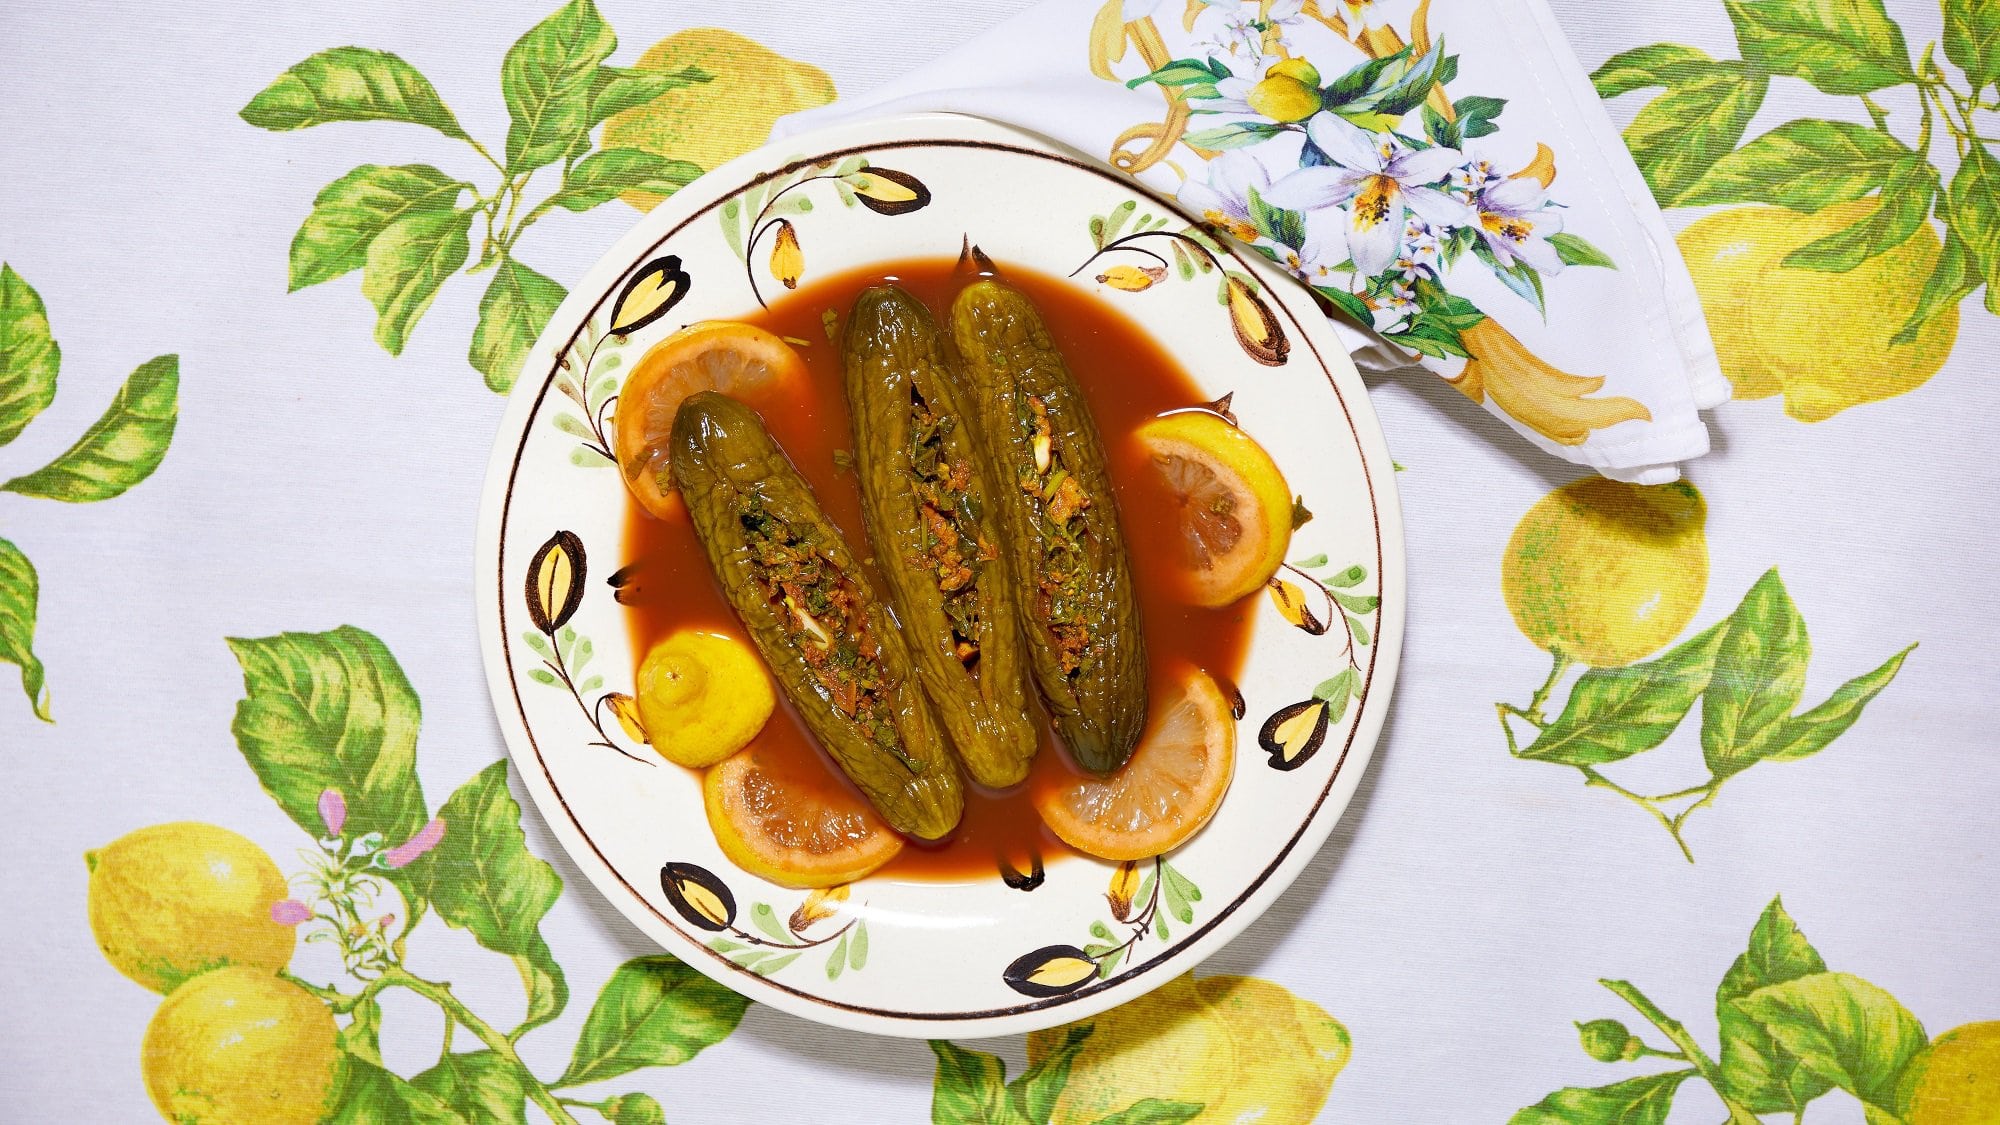 Drei gefüllte eingelegte Salatgurken, auch als Torshi Mahschie bekannt, auf einem Teller mit roter Sauce, Draufsicht.